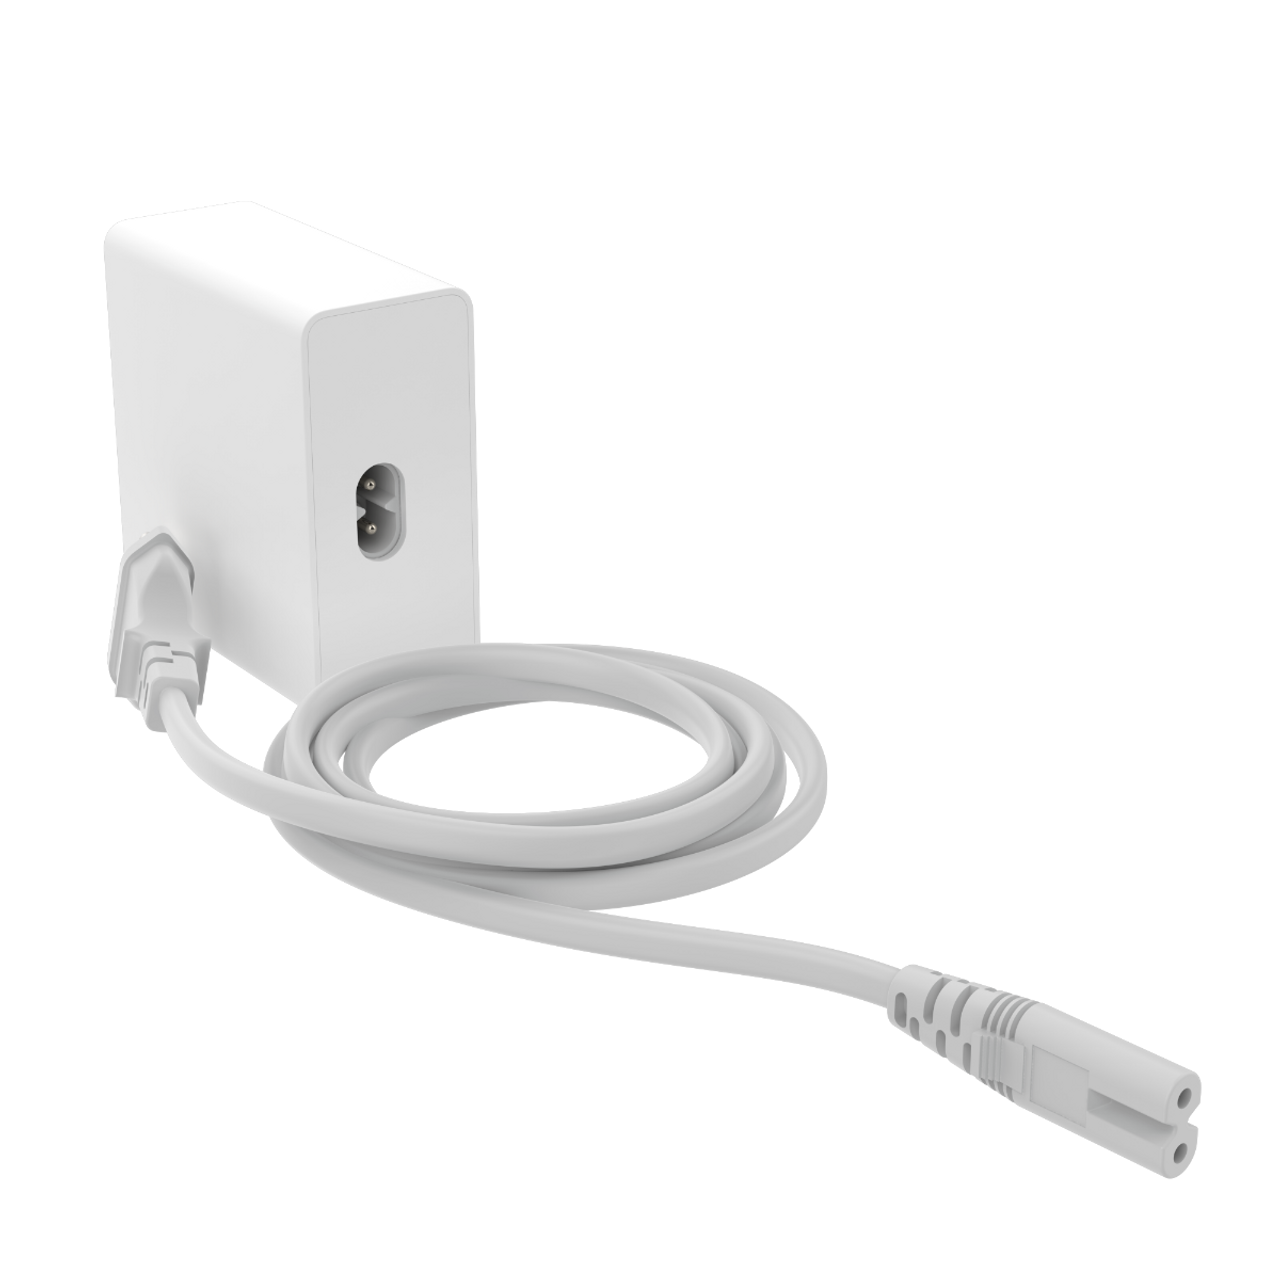 mophie speedport 120 4-port GaN wall charger (120W) - Apple